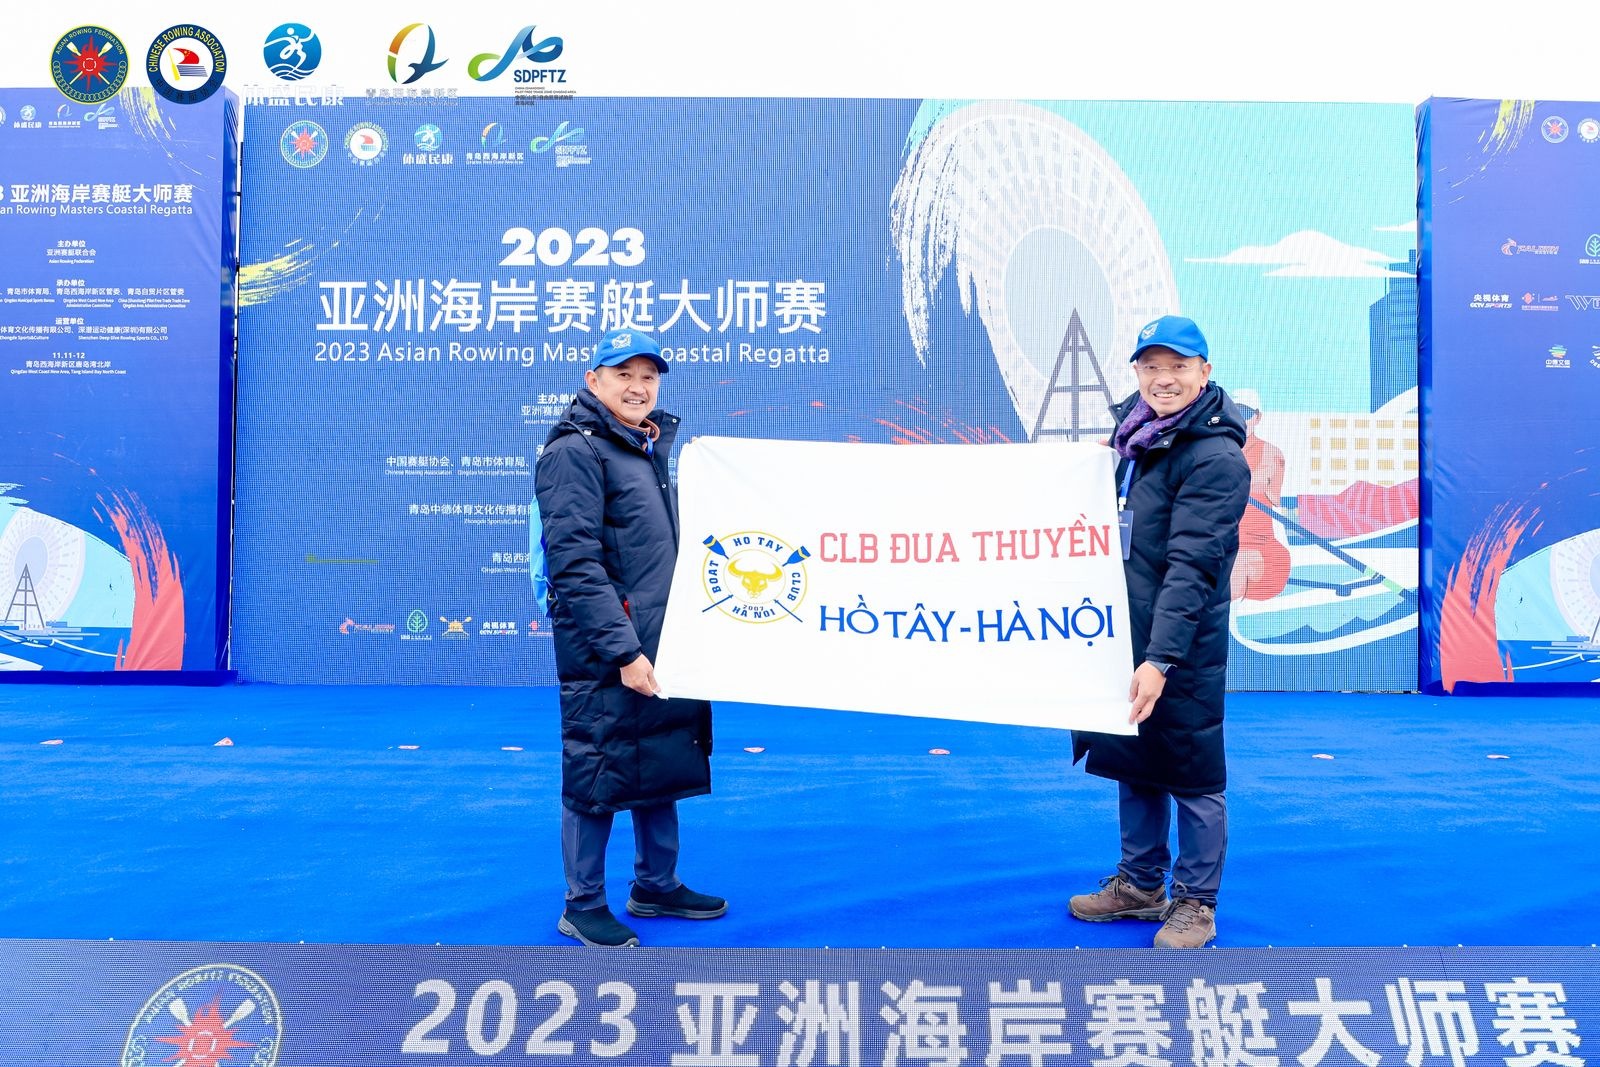 Đại diện CLB tham dự Giải đua thuyền Rowing Biển châu Á 2023